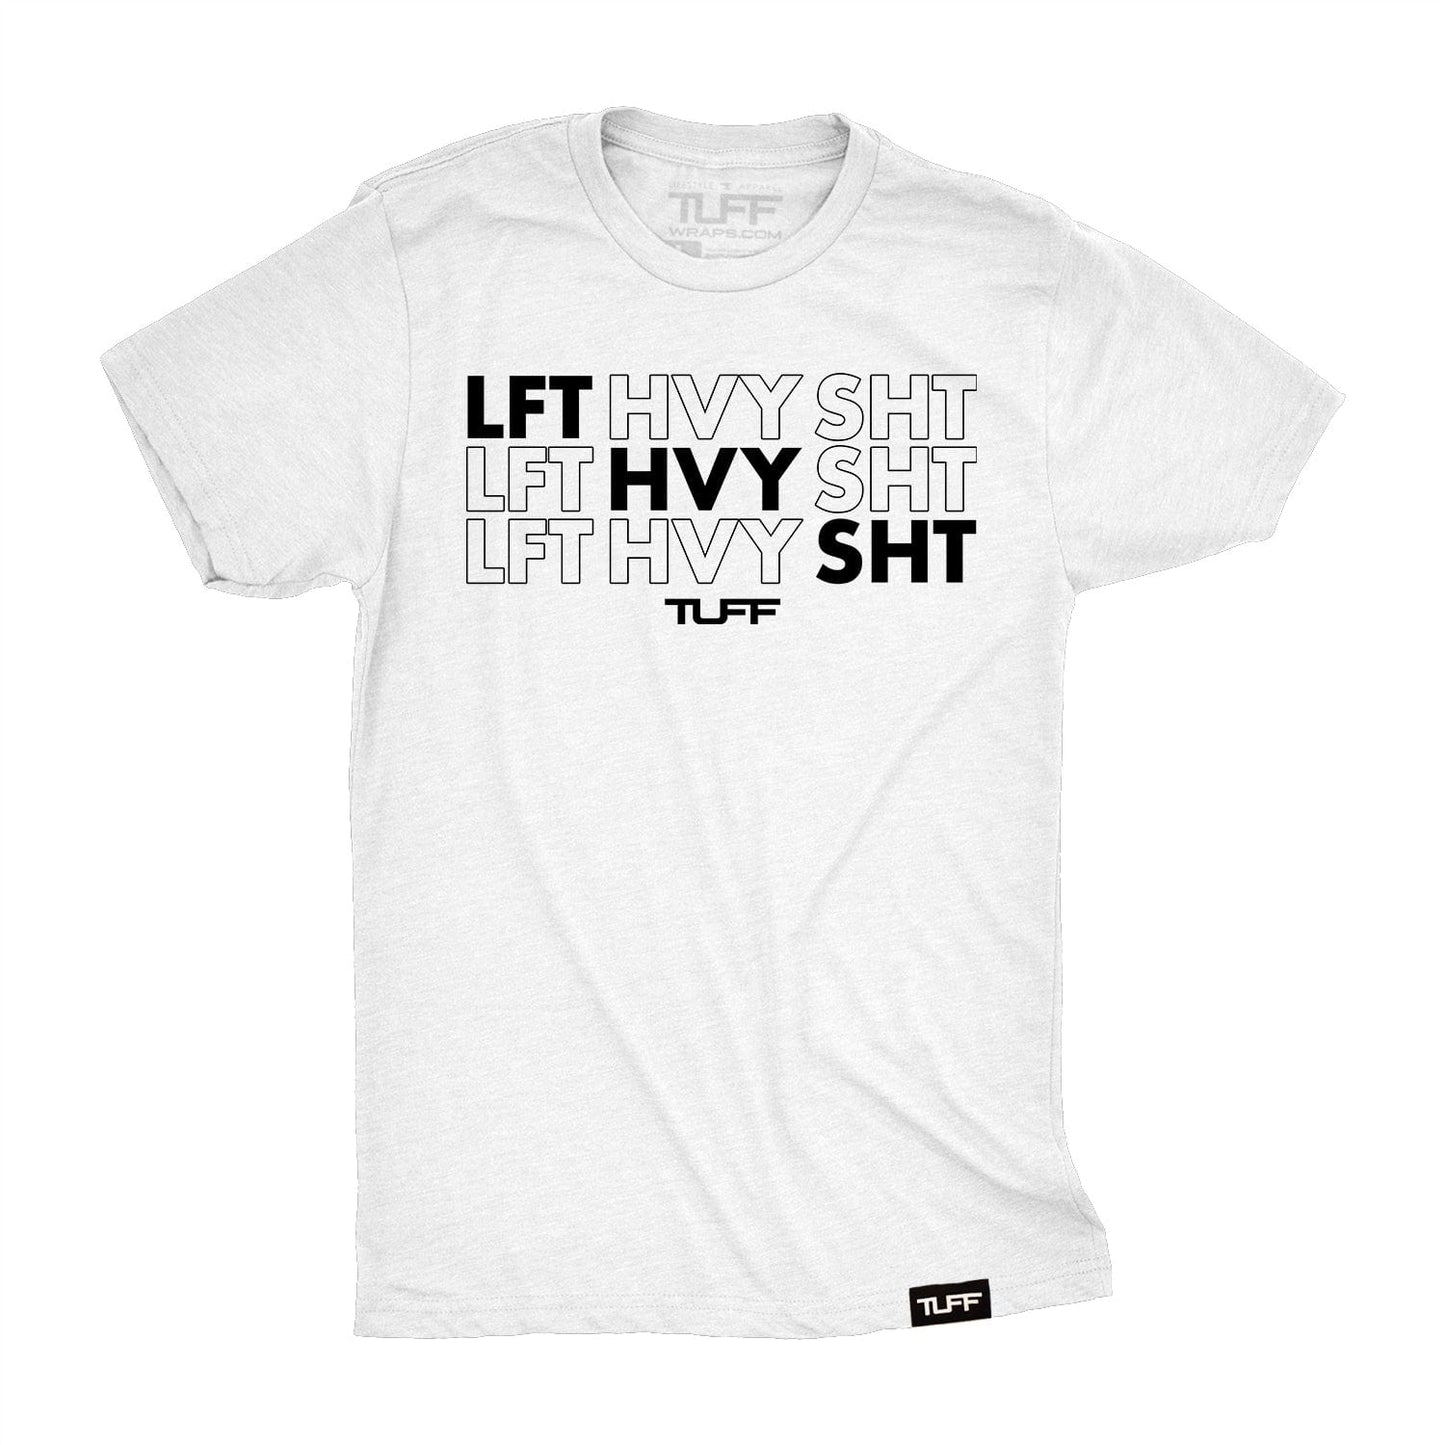 LFT HVY SHT Tee S / White TuffWraps.com